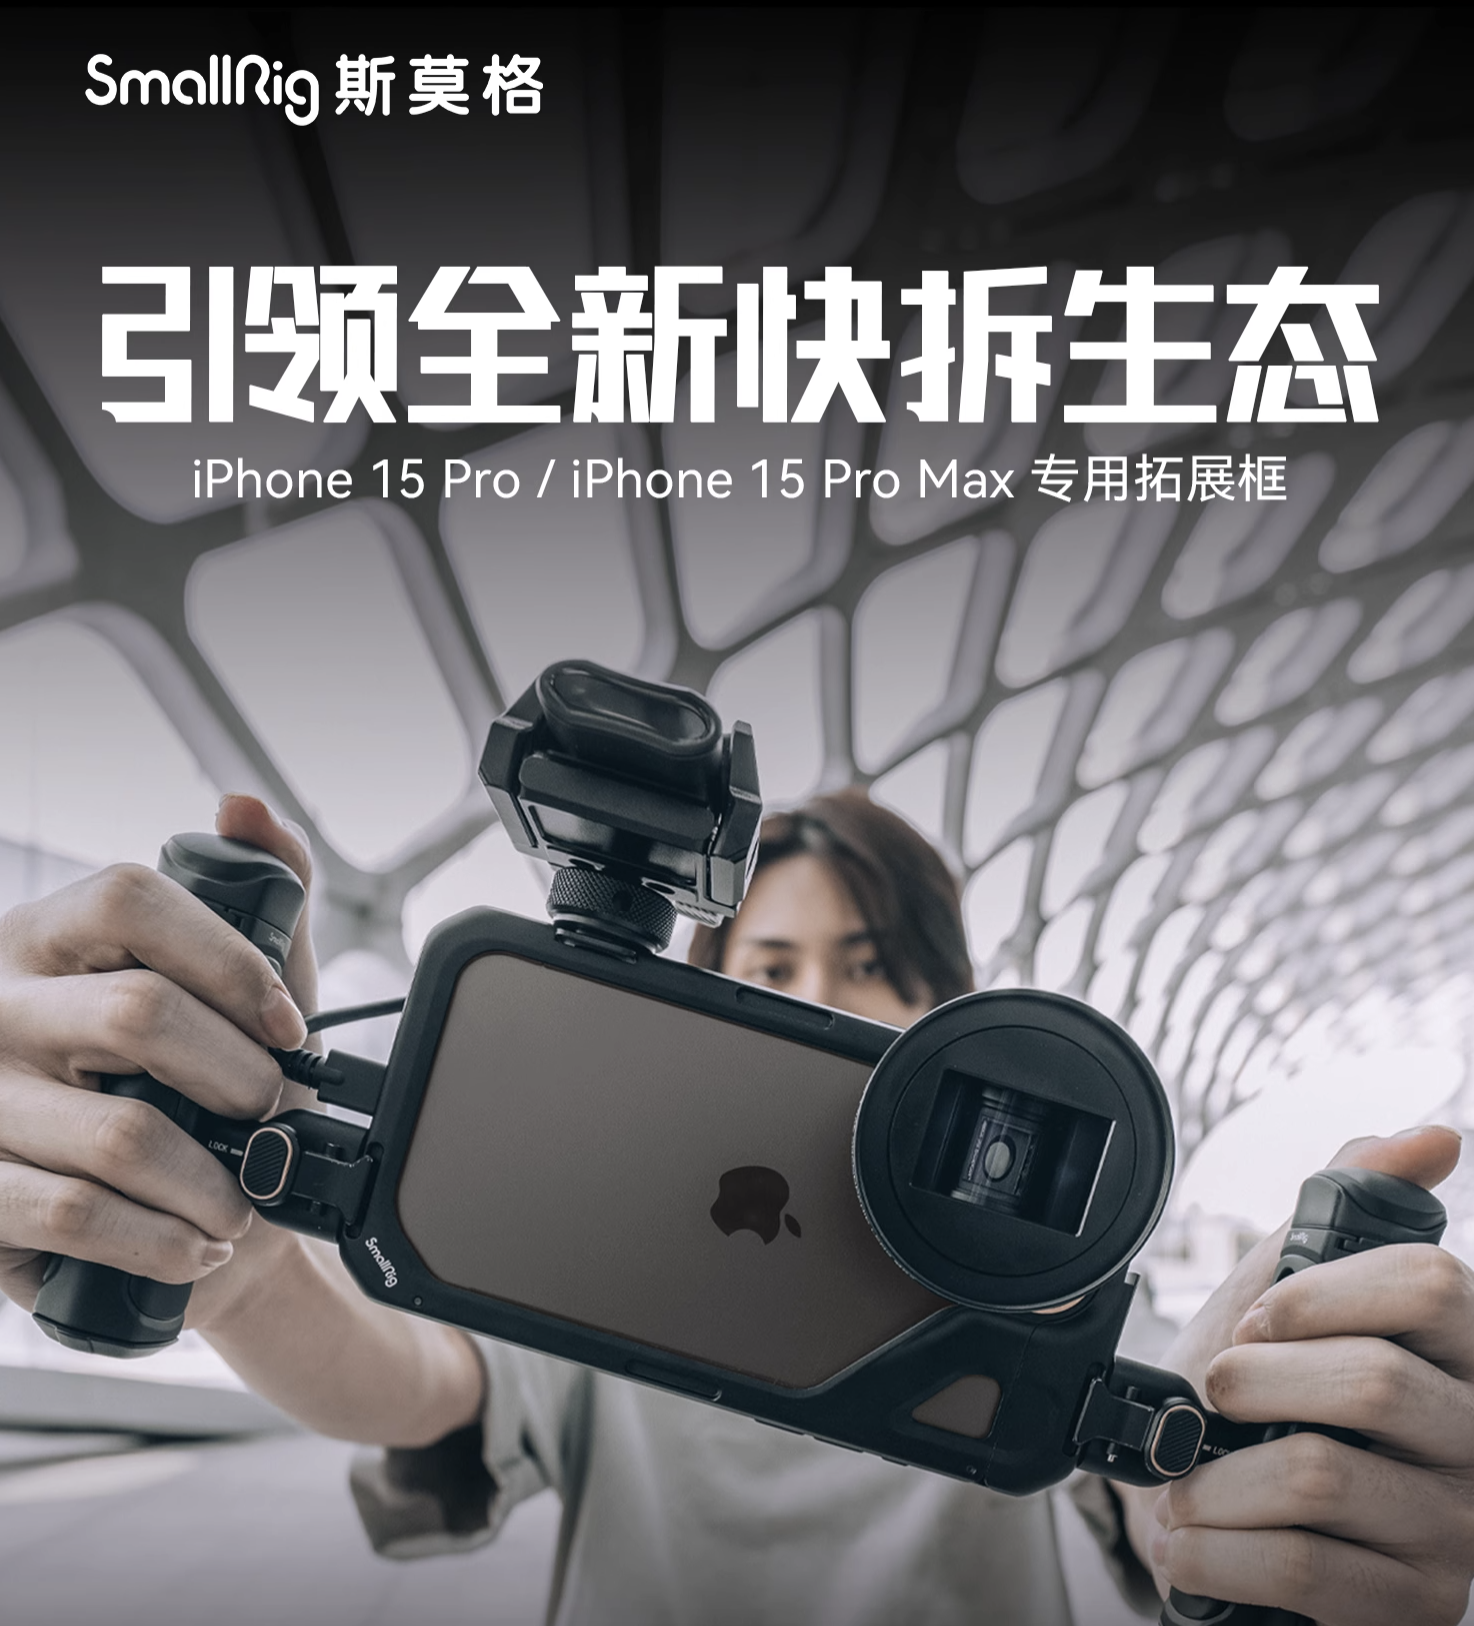 SmallRig x Brandon Li 15 Pro Max Mobile Video Cage for iPhone 15